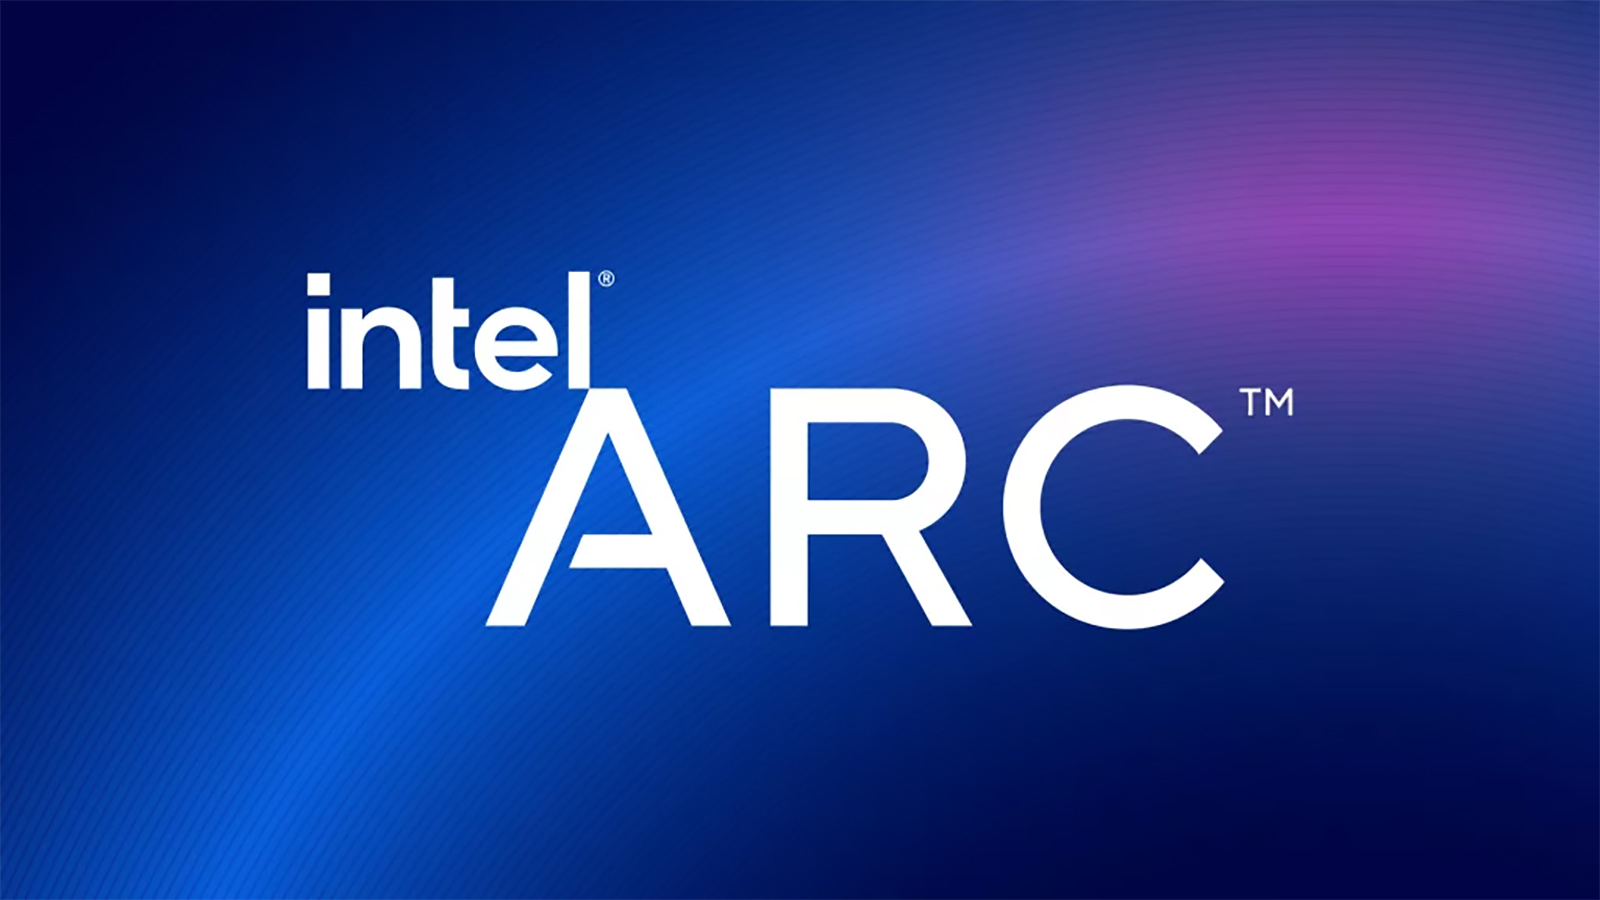 英特爾即將推出新的 Line of Arc 筆記型電腦 GPU